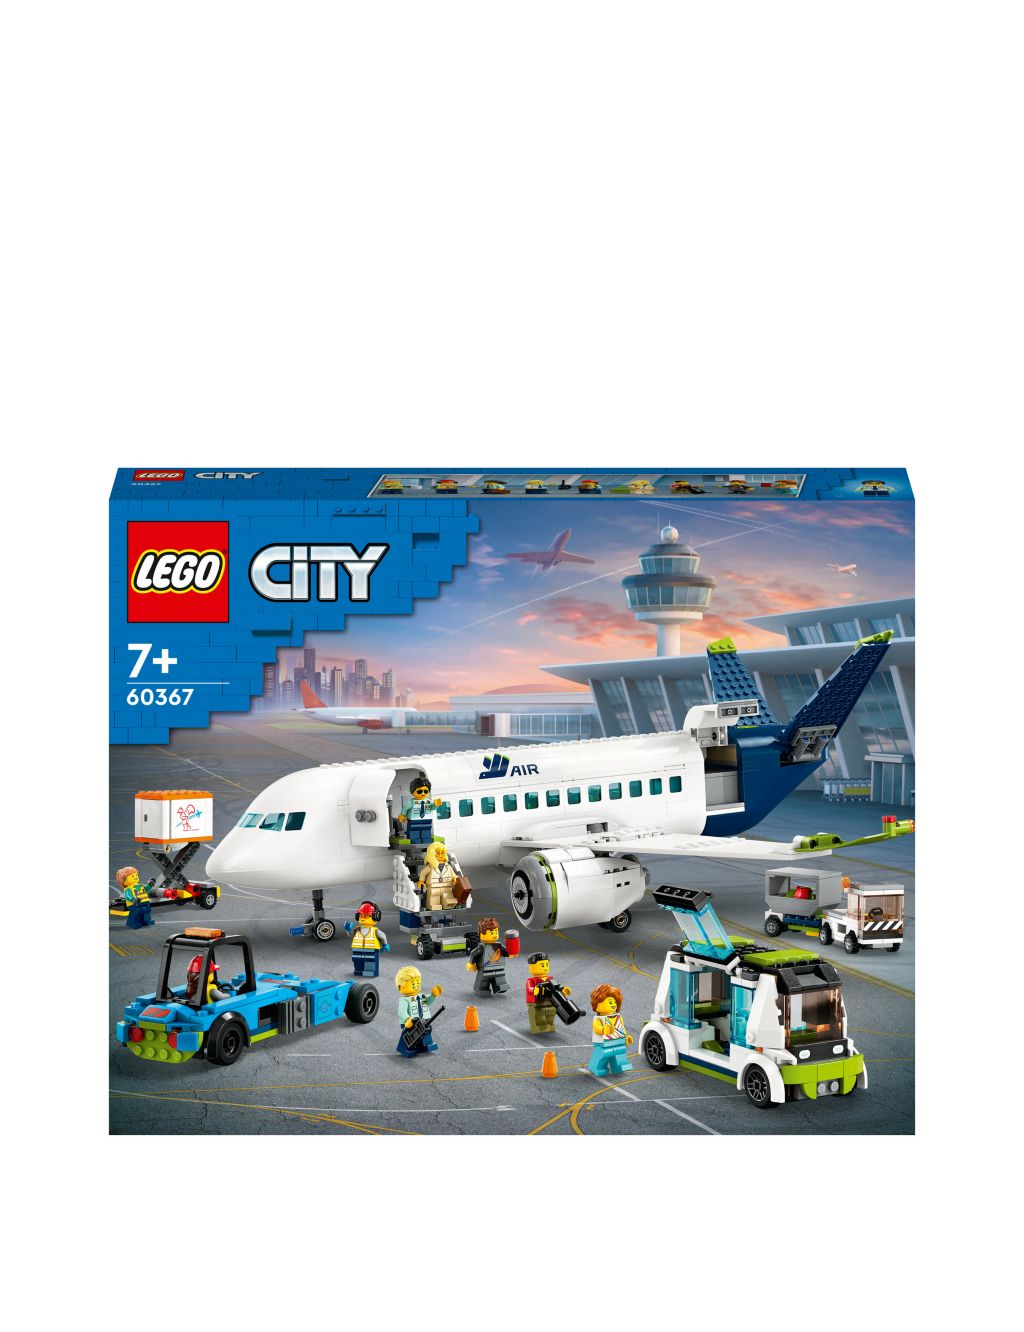 LEGO City Passenger Aeroplane Toy Model Kit 60367 (7+ Yrs) 1 of 7